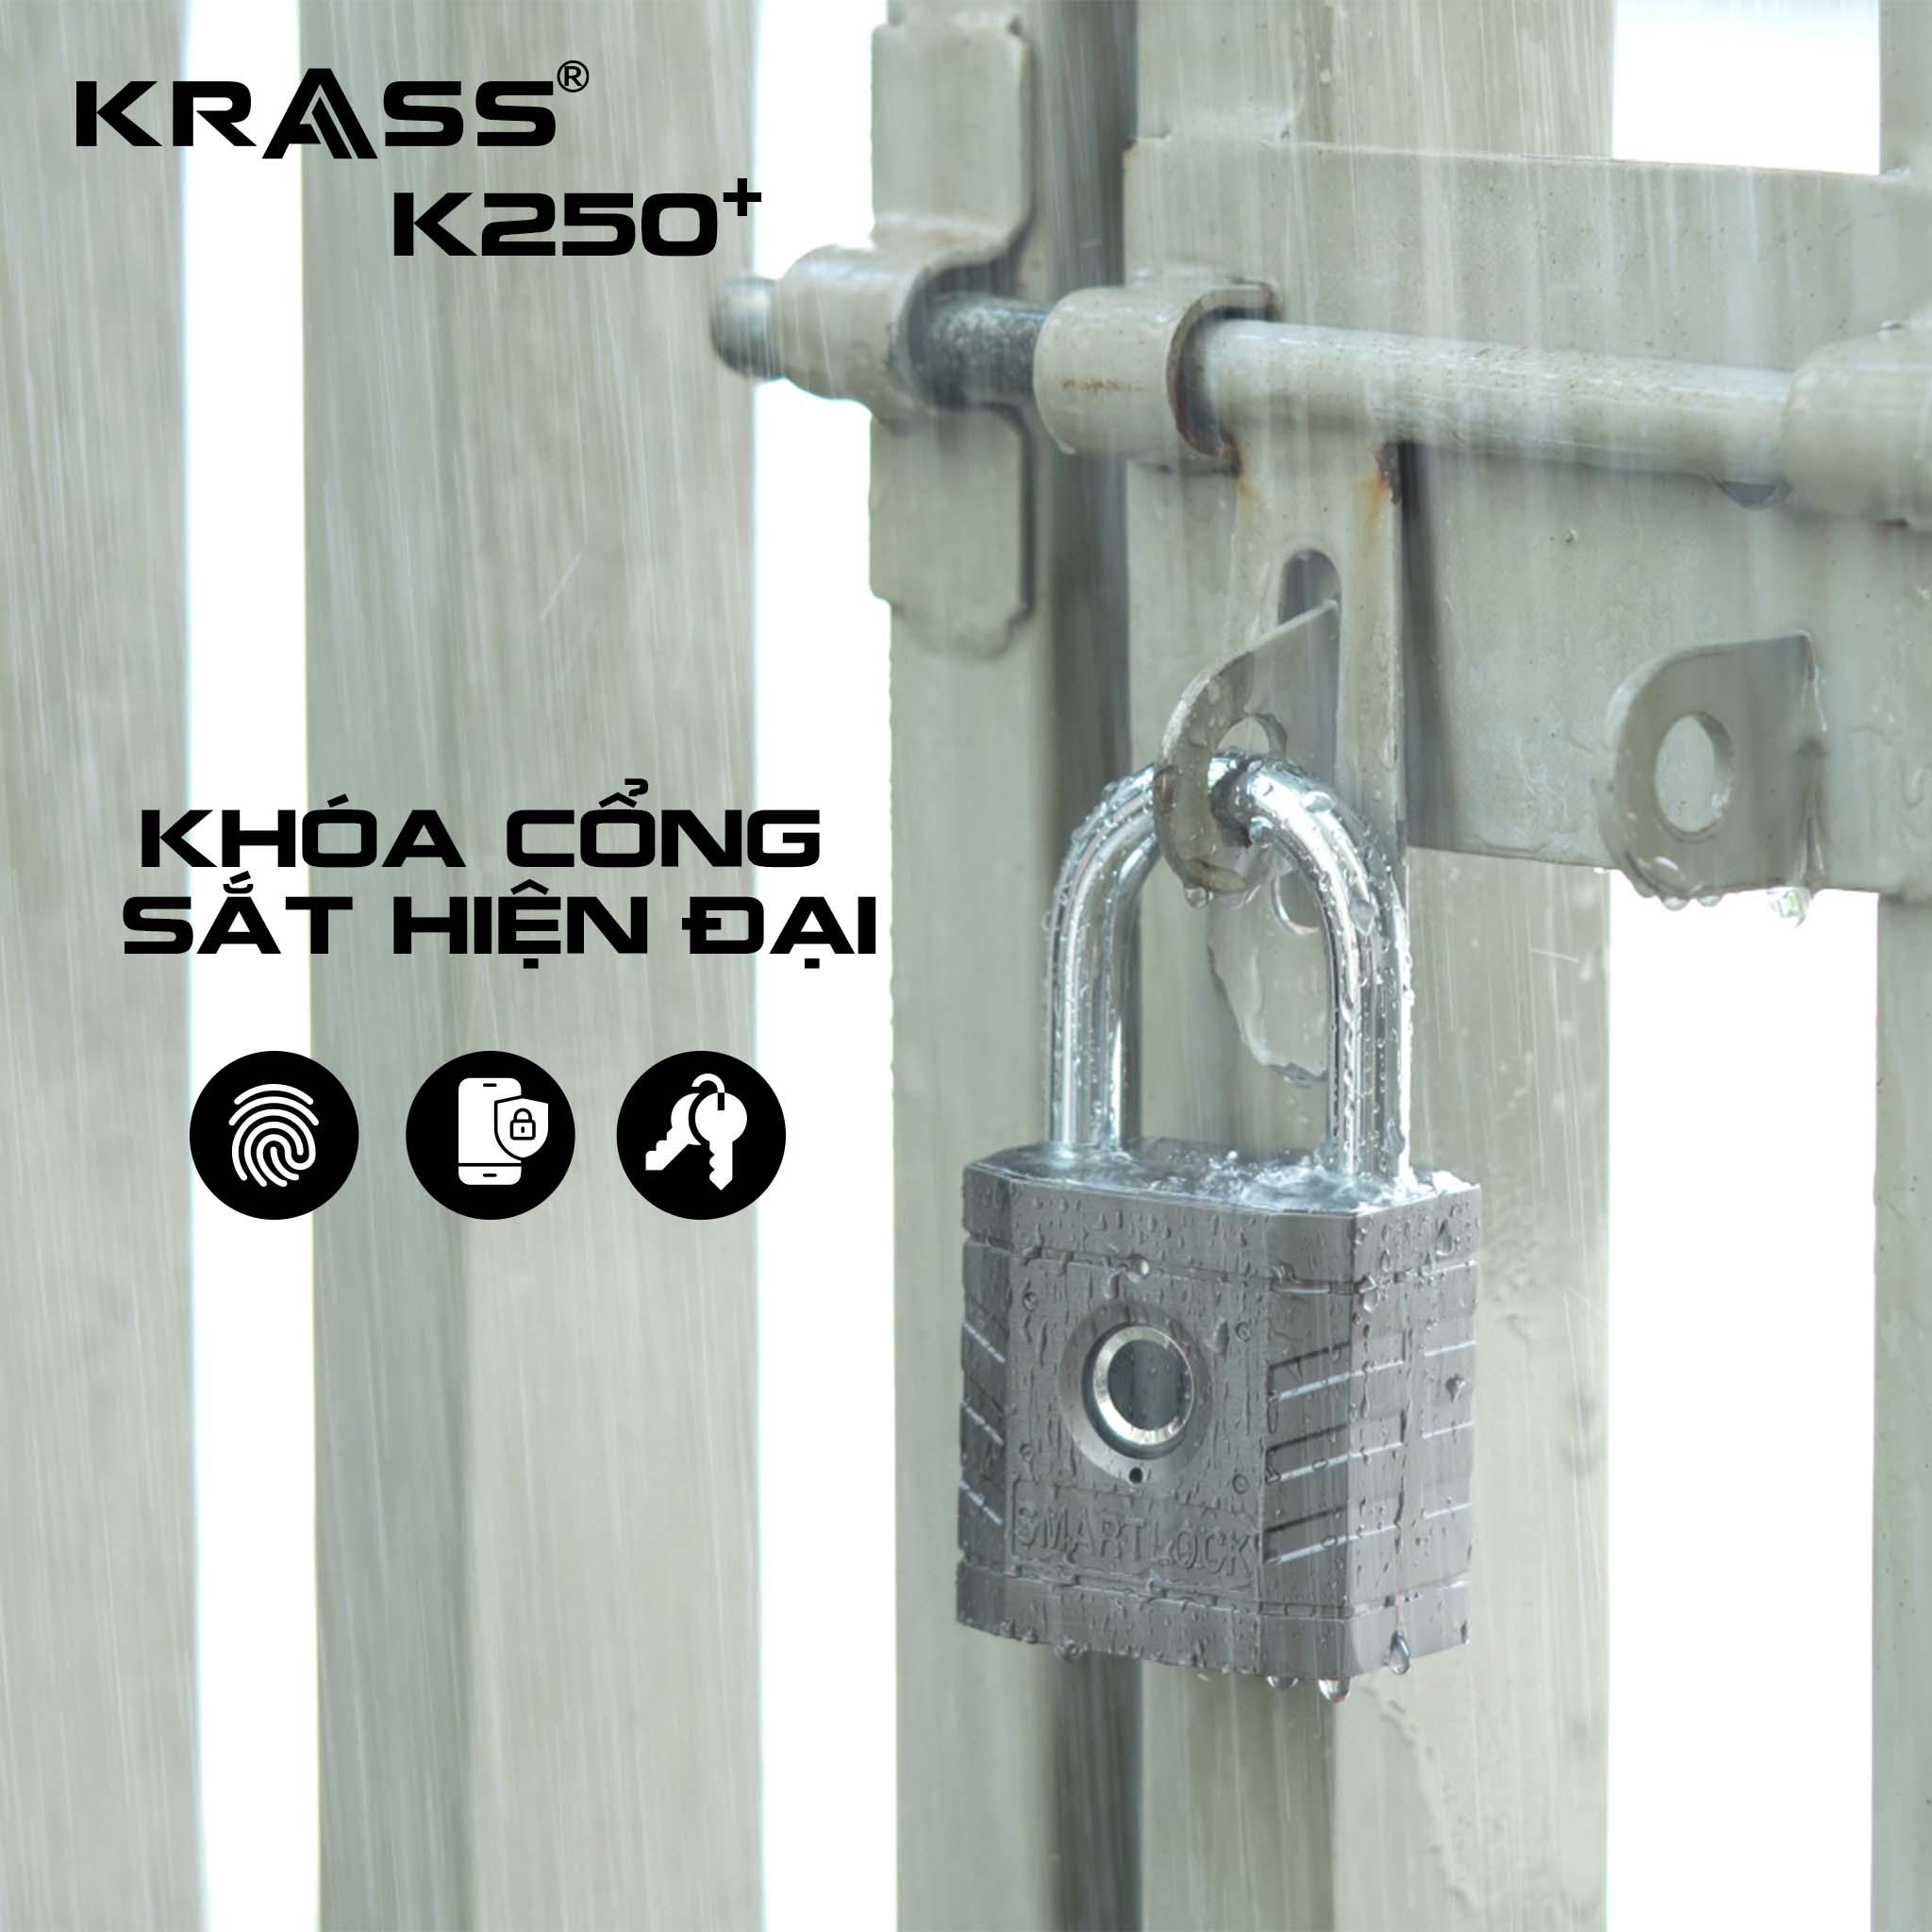 Khóa Krass K250 Plus - Đột phá công nghệ Đức về bảo mật vân tay - 5